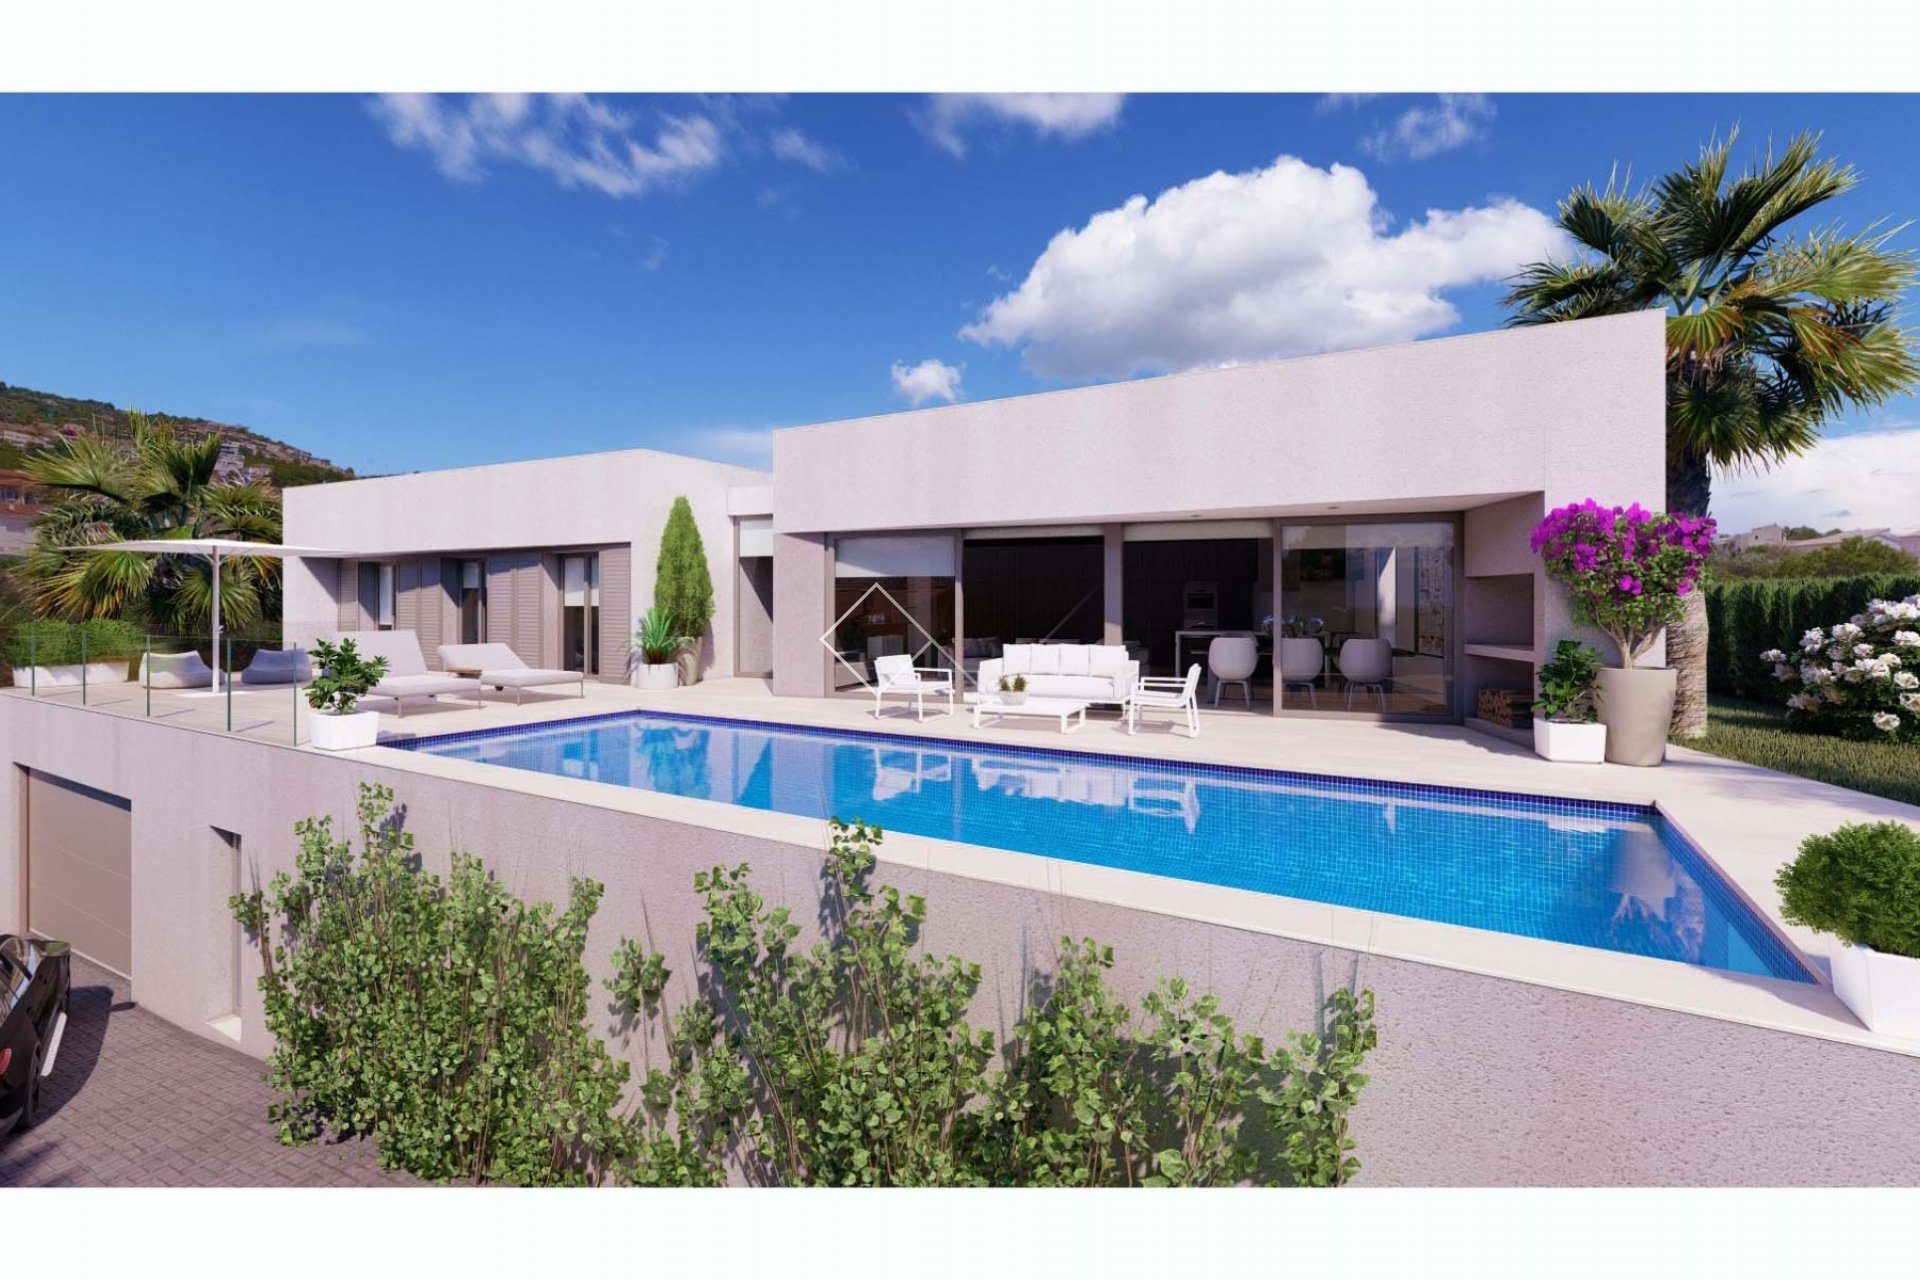 Projekt für eine neue moderne Design-Villa in Gran Sol, Calpe